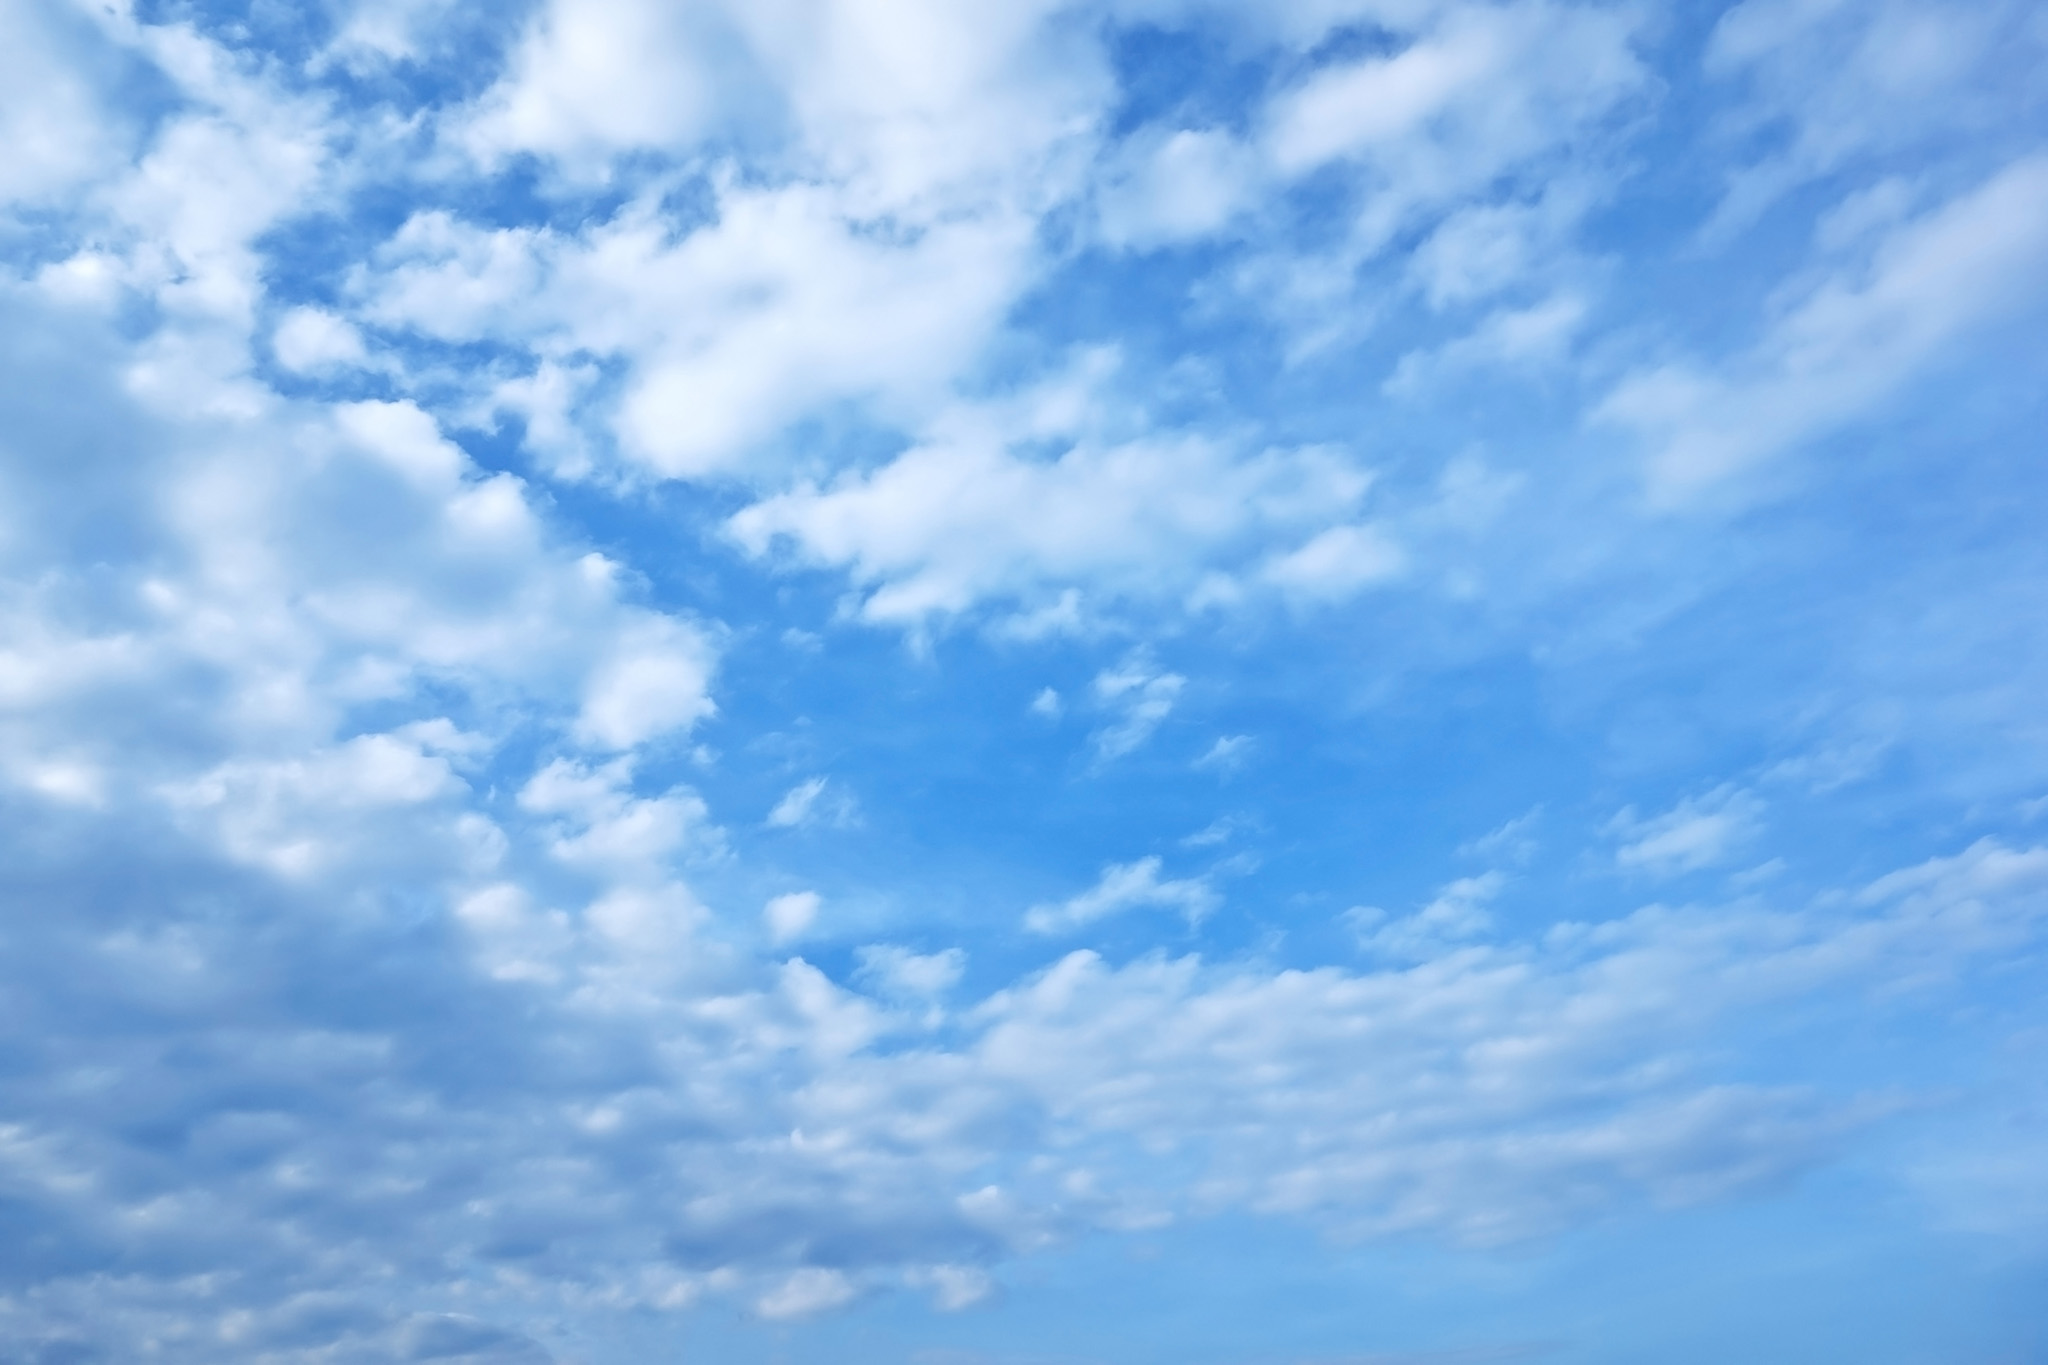 青空に遠くまで広がる綿雲 の画像素材を無料ダウンロード 1 フリー素材 Beiz Images